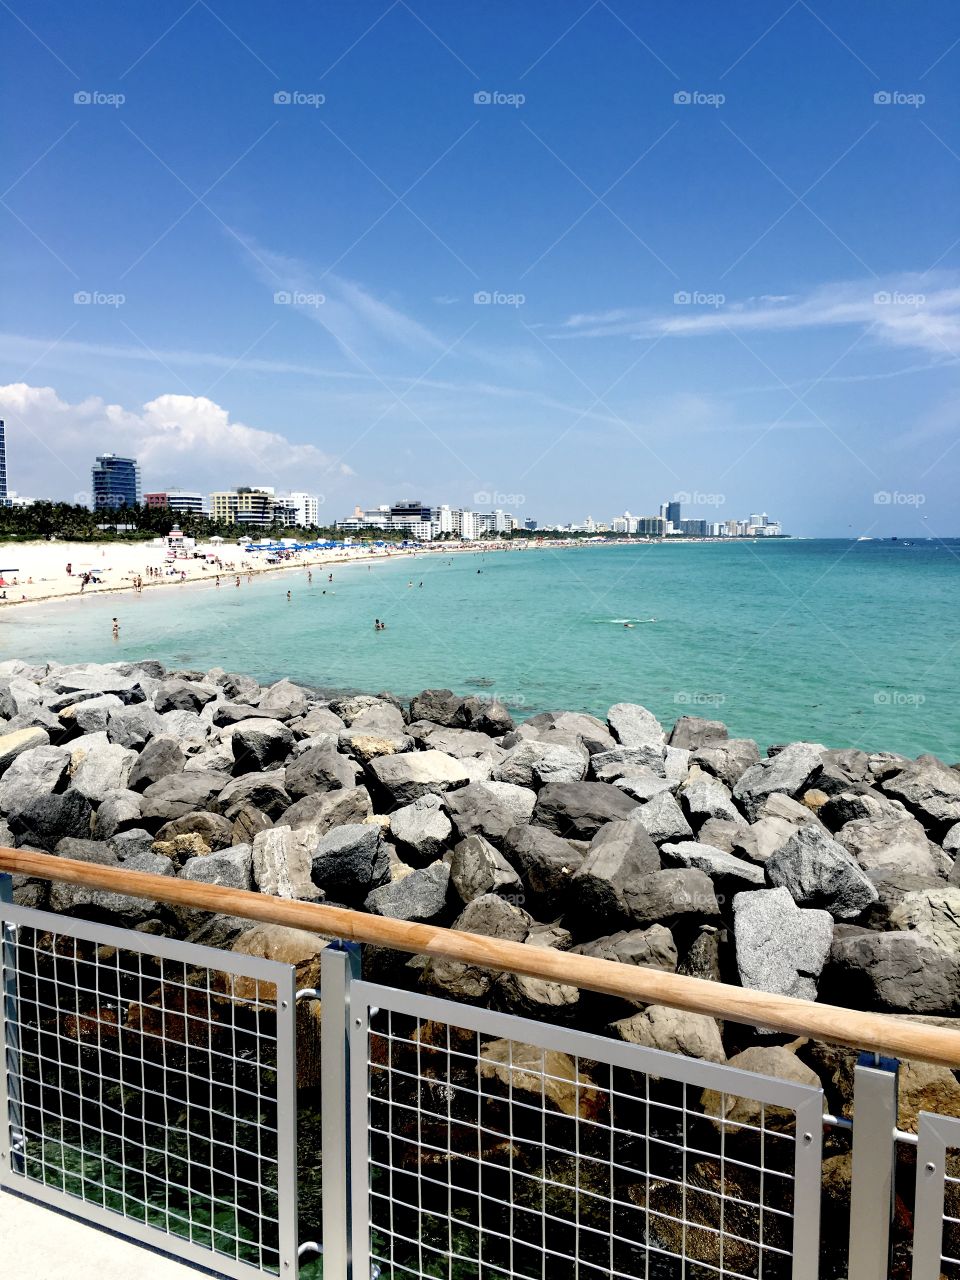 South Pointe Park Pier, South Beach, Miami FL